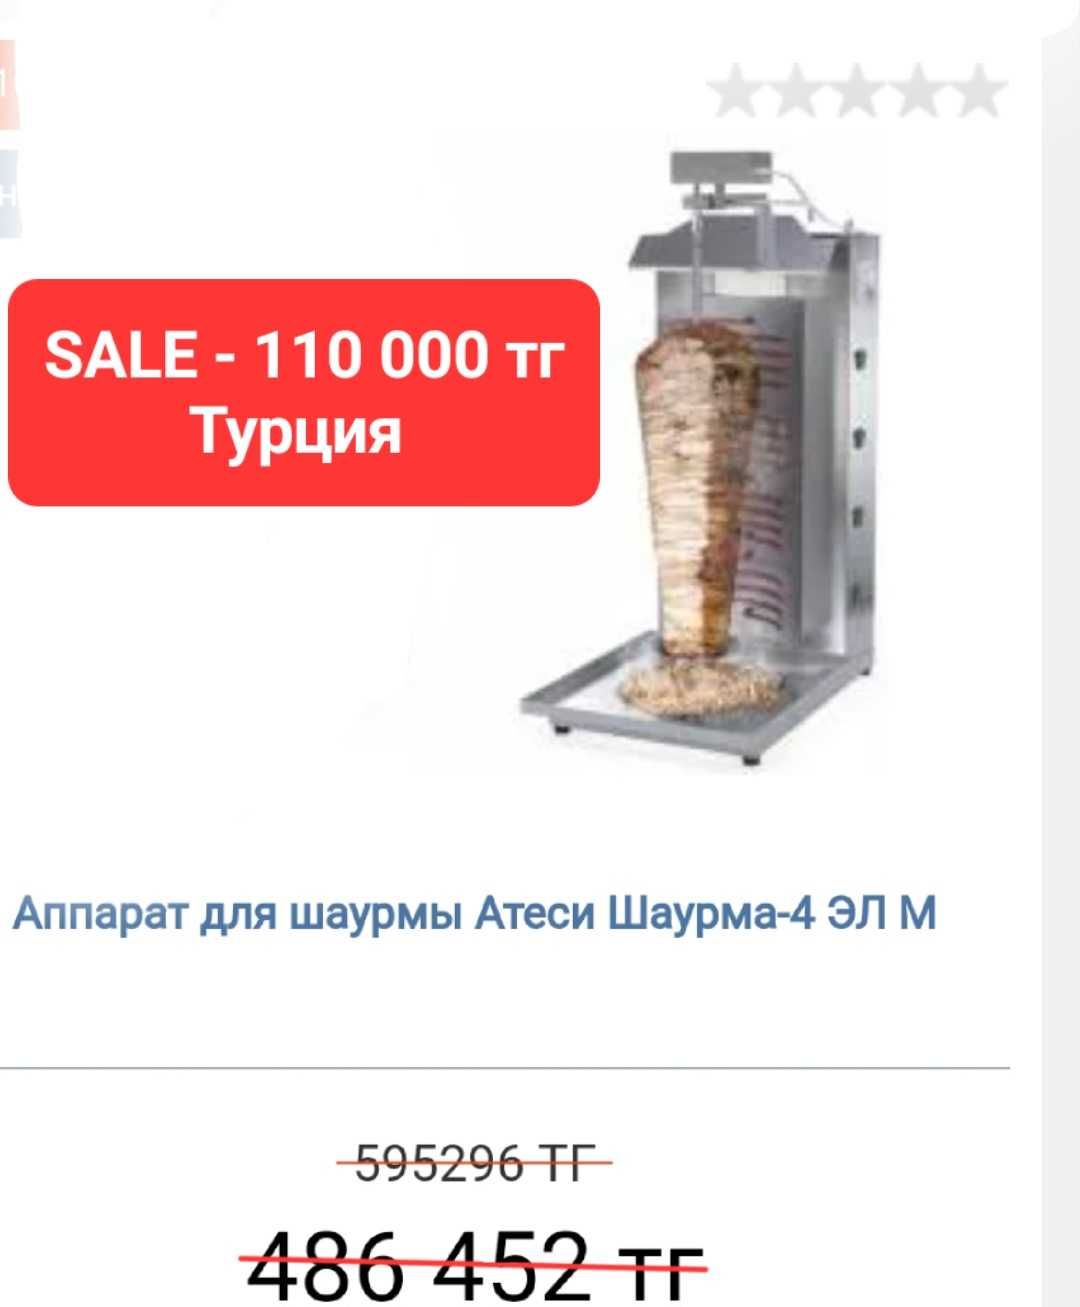 Новый аппарат для Донера ,Шаурмы производство "Турция".